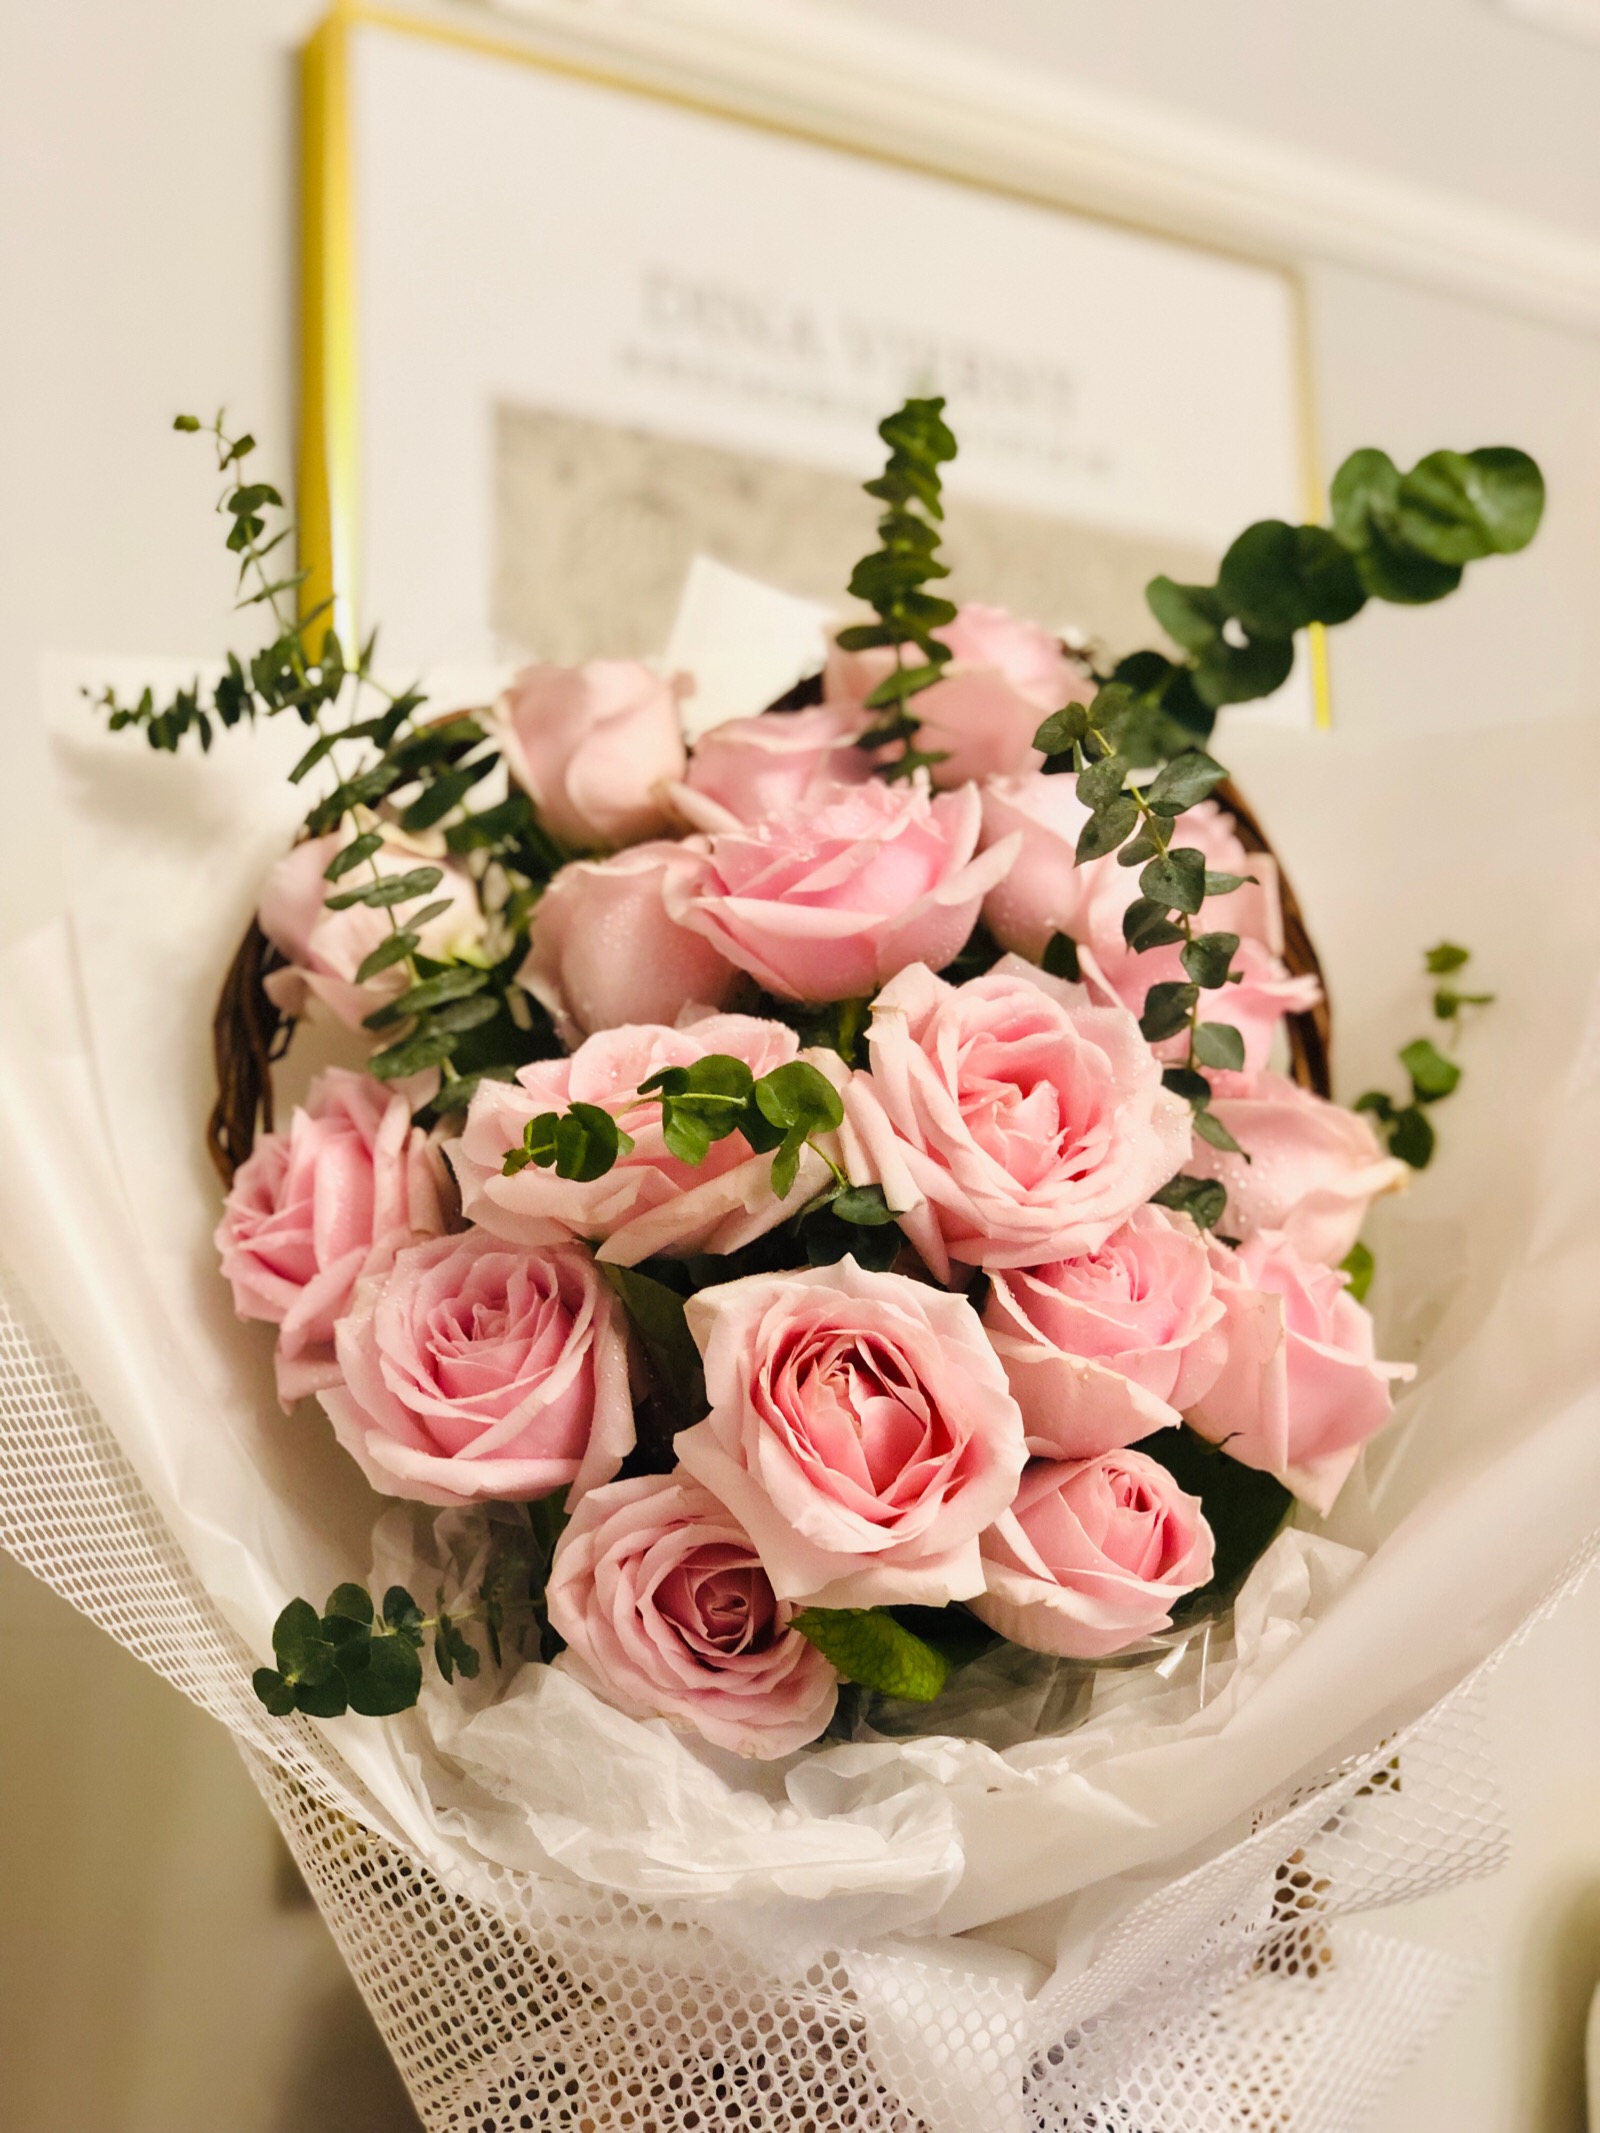 粉色玫瑰花4K高清图片_4K风景图片高清壁纸_墨鱼部落格